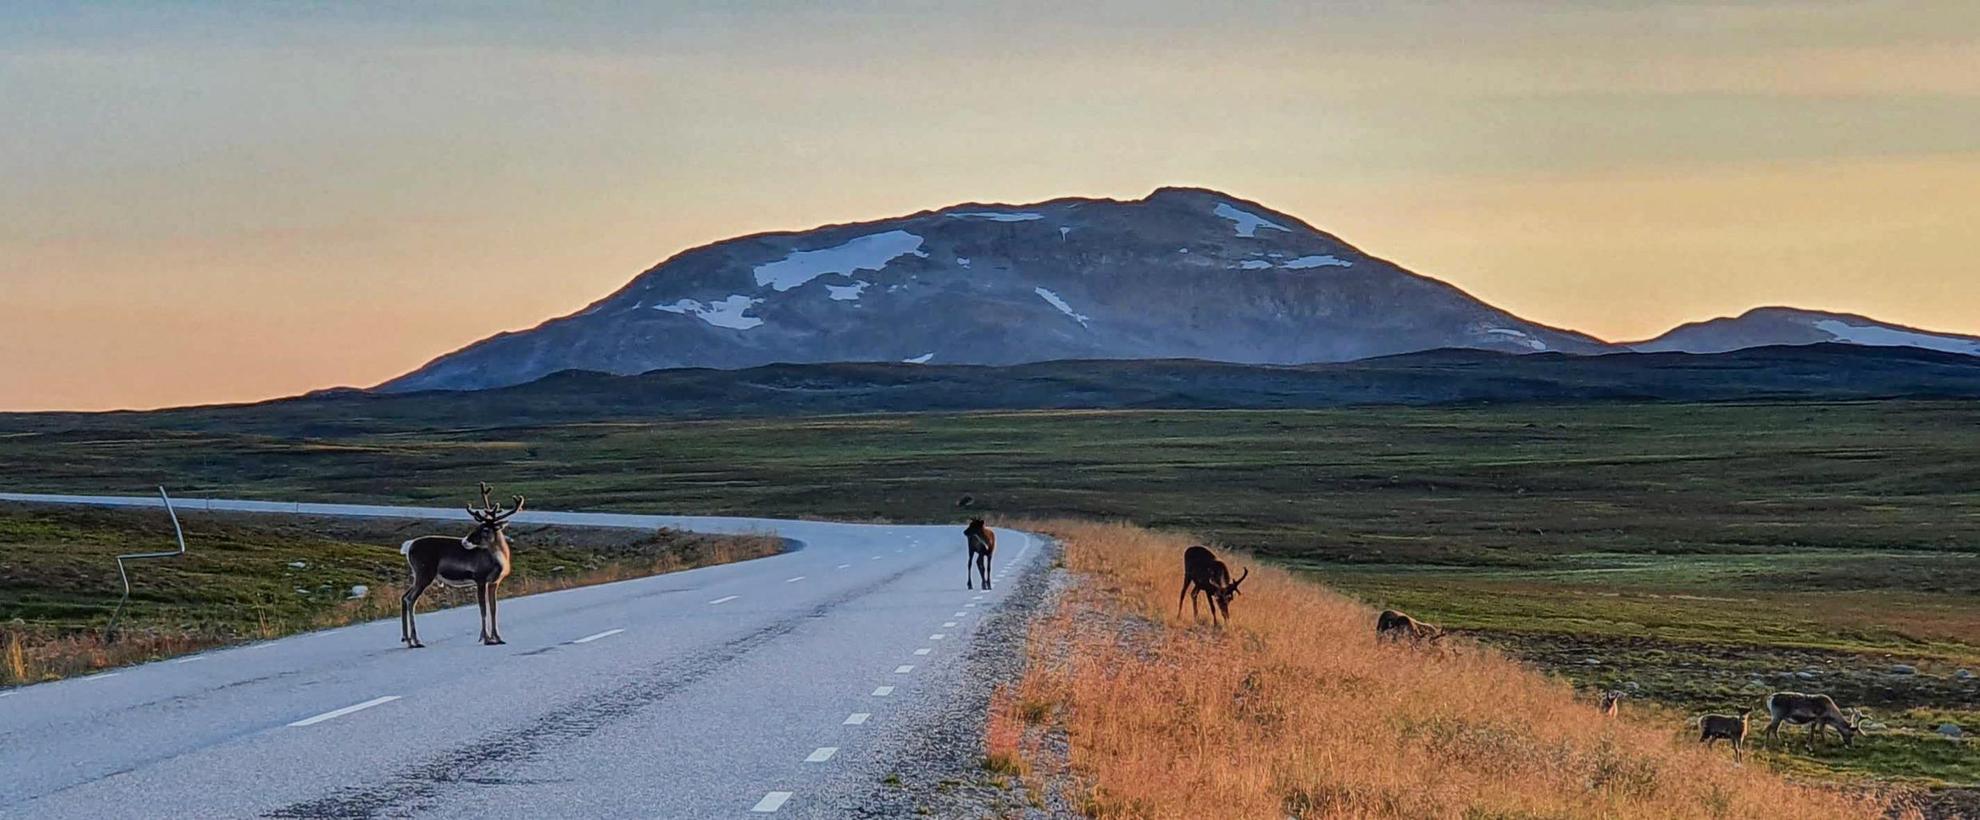 Vue sur une route entourée d'herbe et sur une montagne. Quatre rennes se trouvent sur et à proximité de la route.